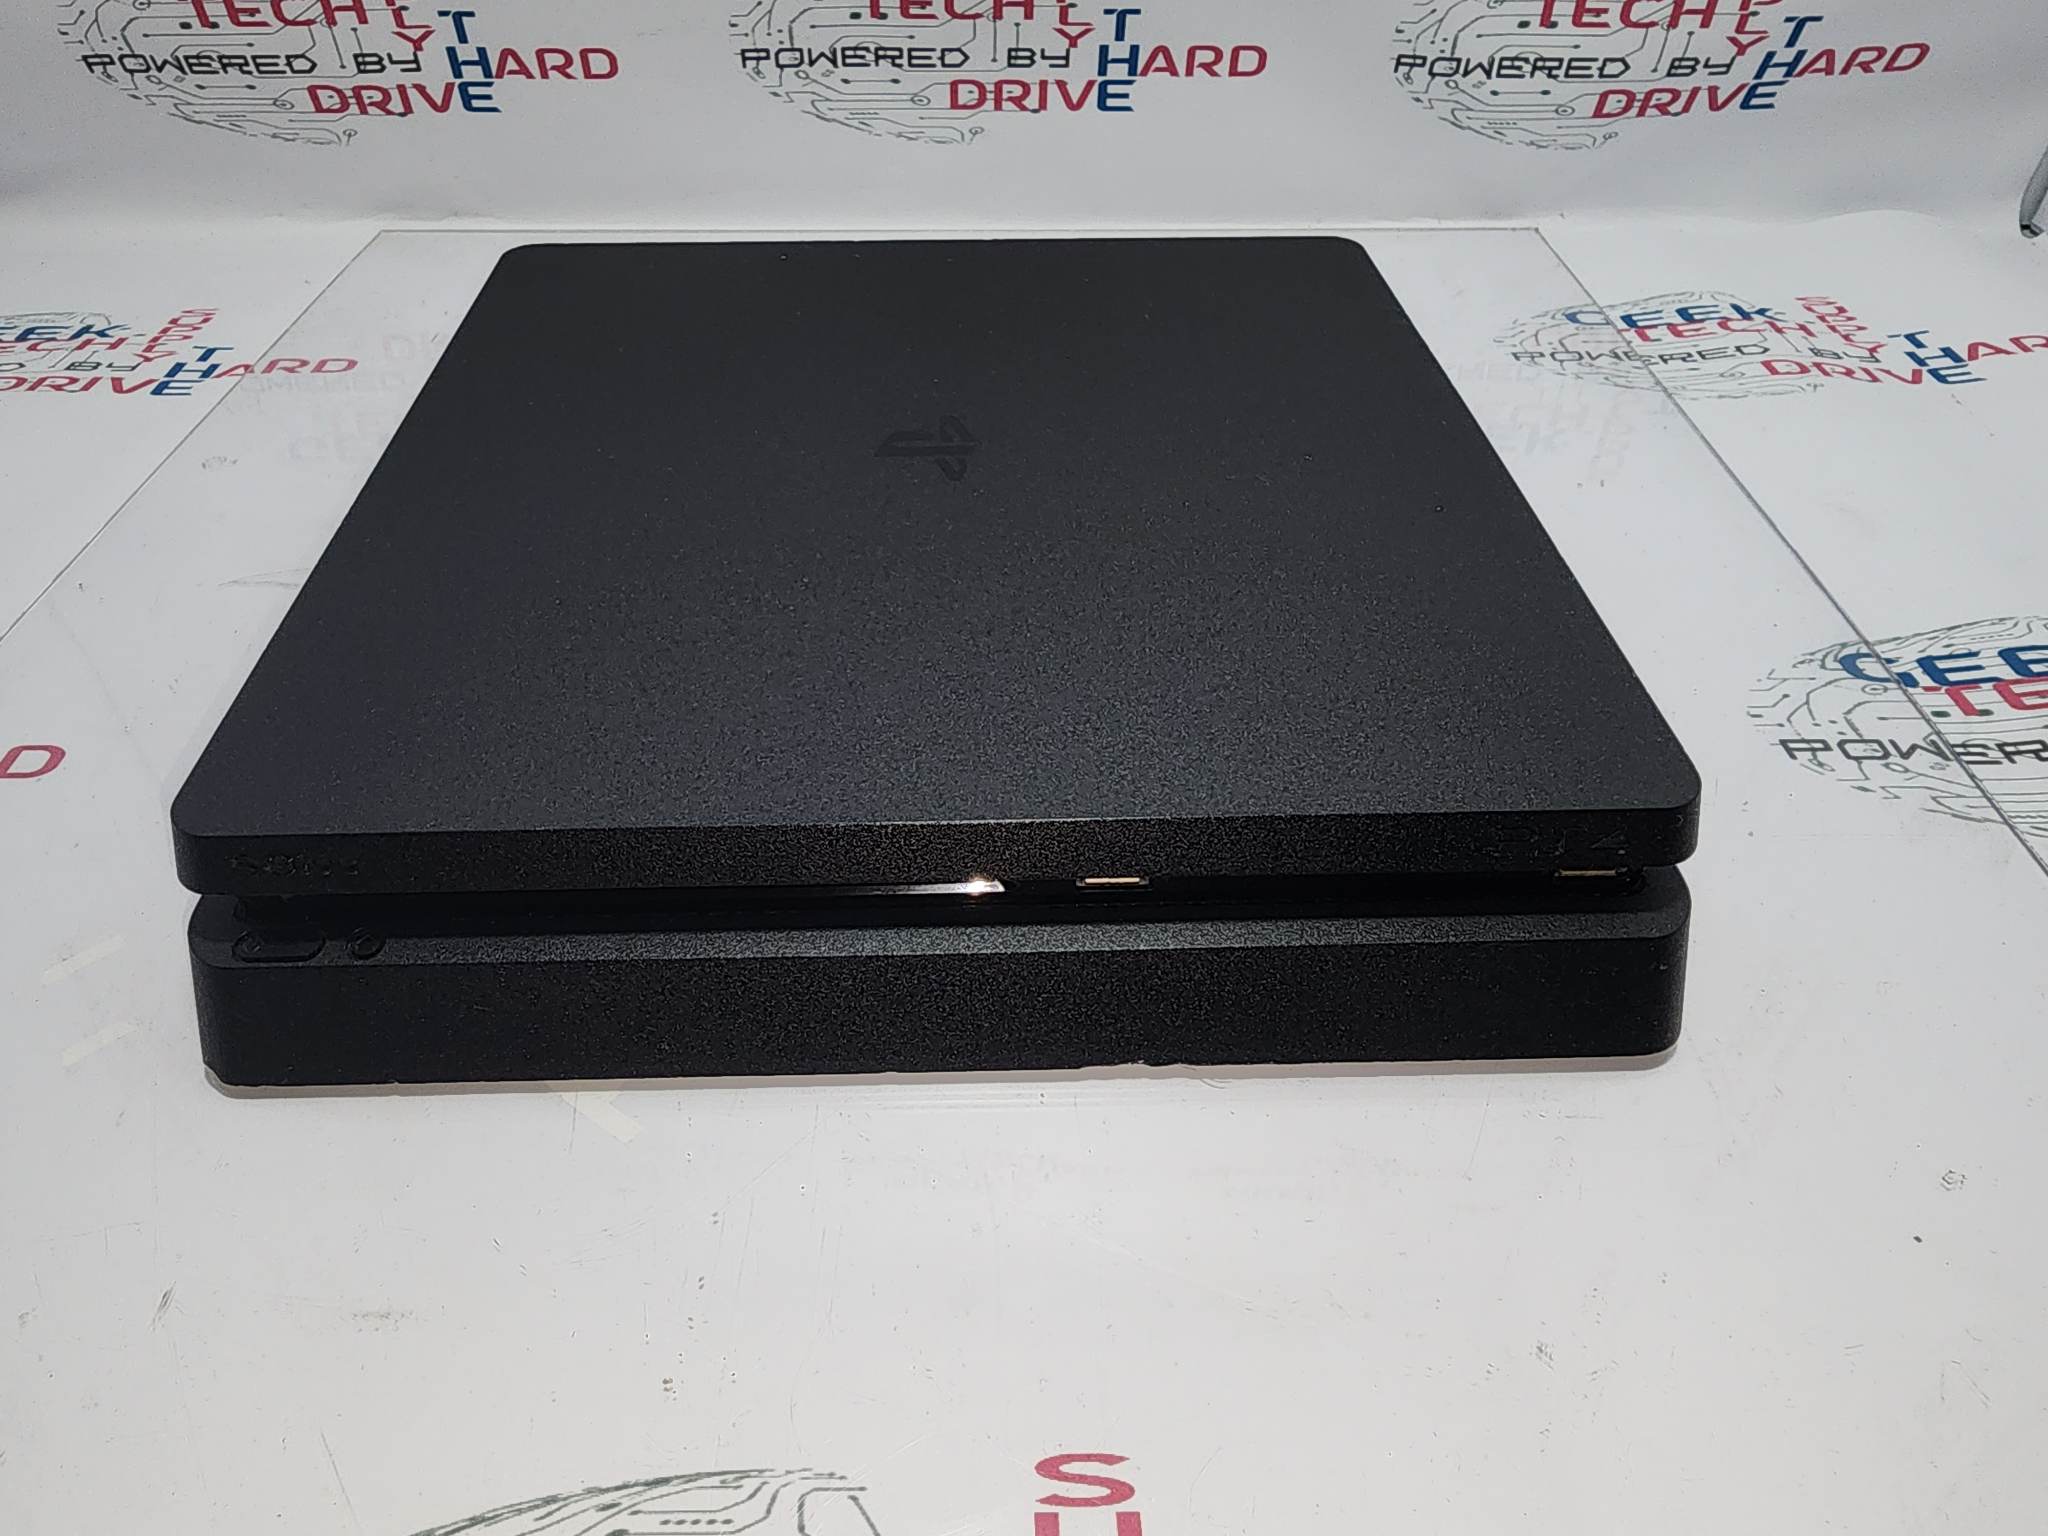 Sony Playstation 4 PS4 Slim CUH-2215B 1tb Game Console w/ Controller Black | B Grade - Geek Tech